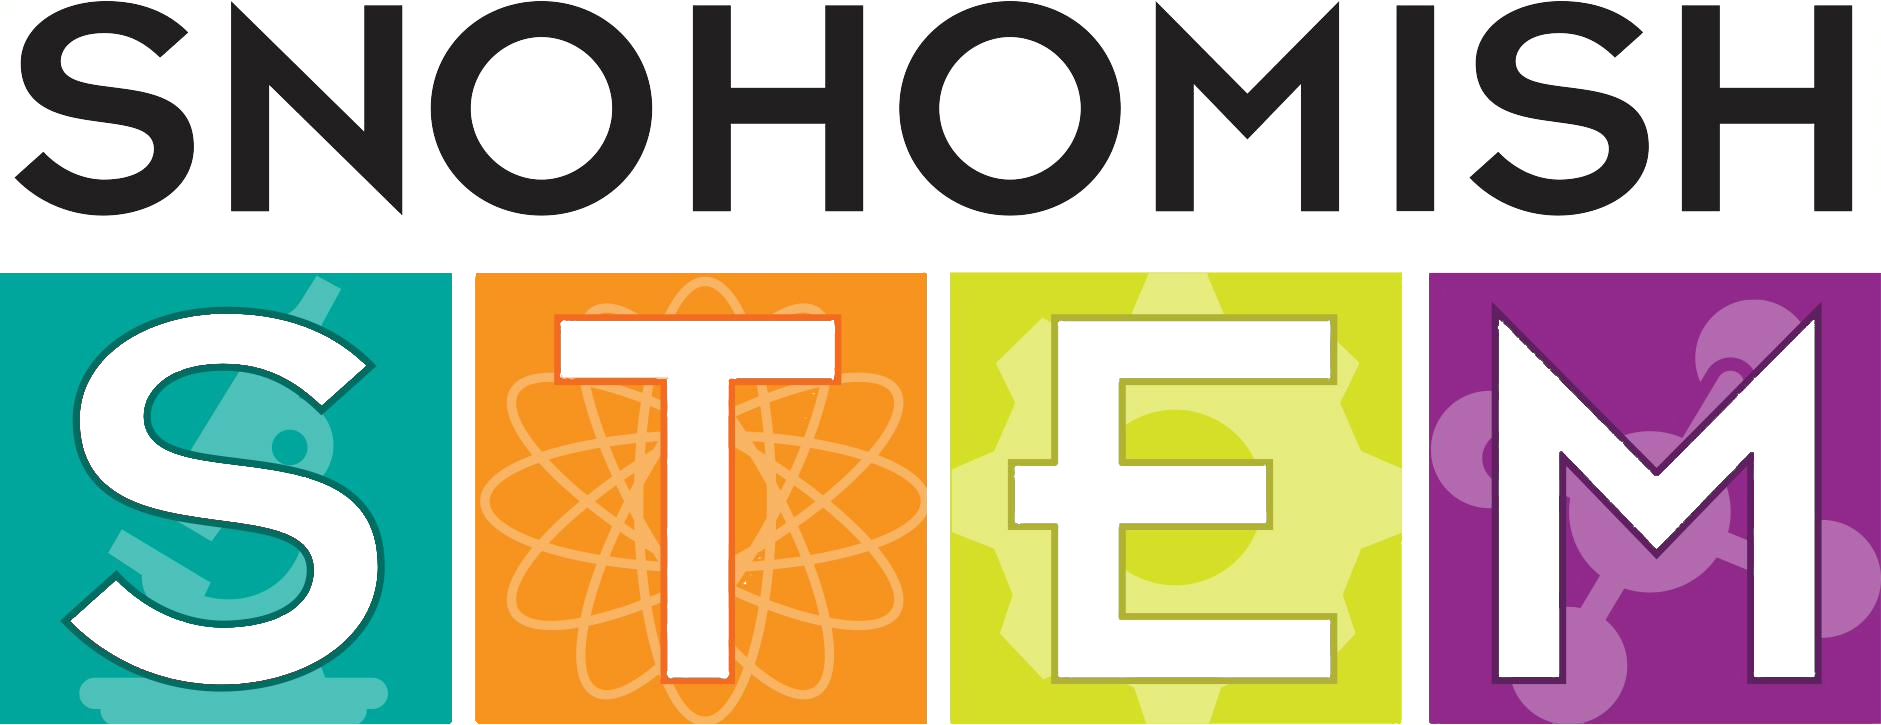 Snohomish Stem logo